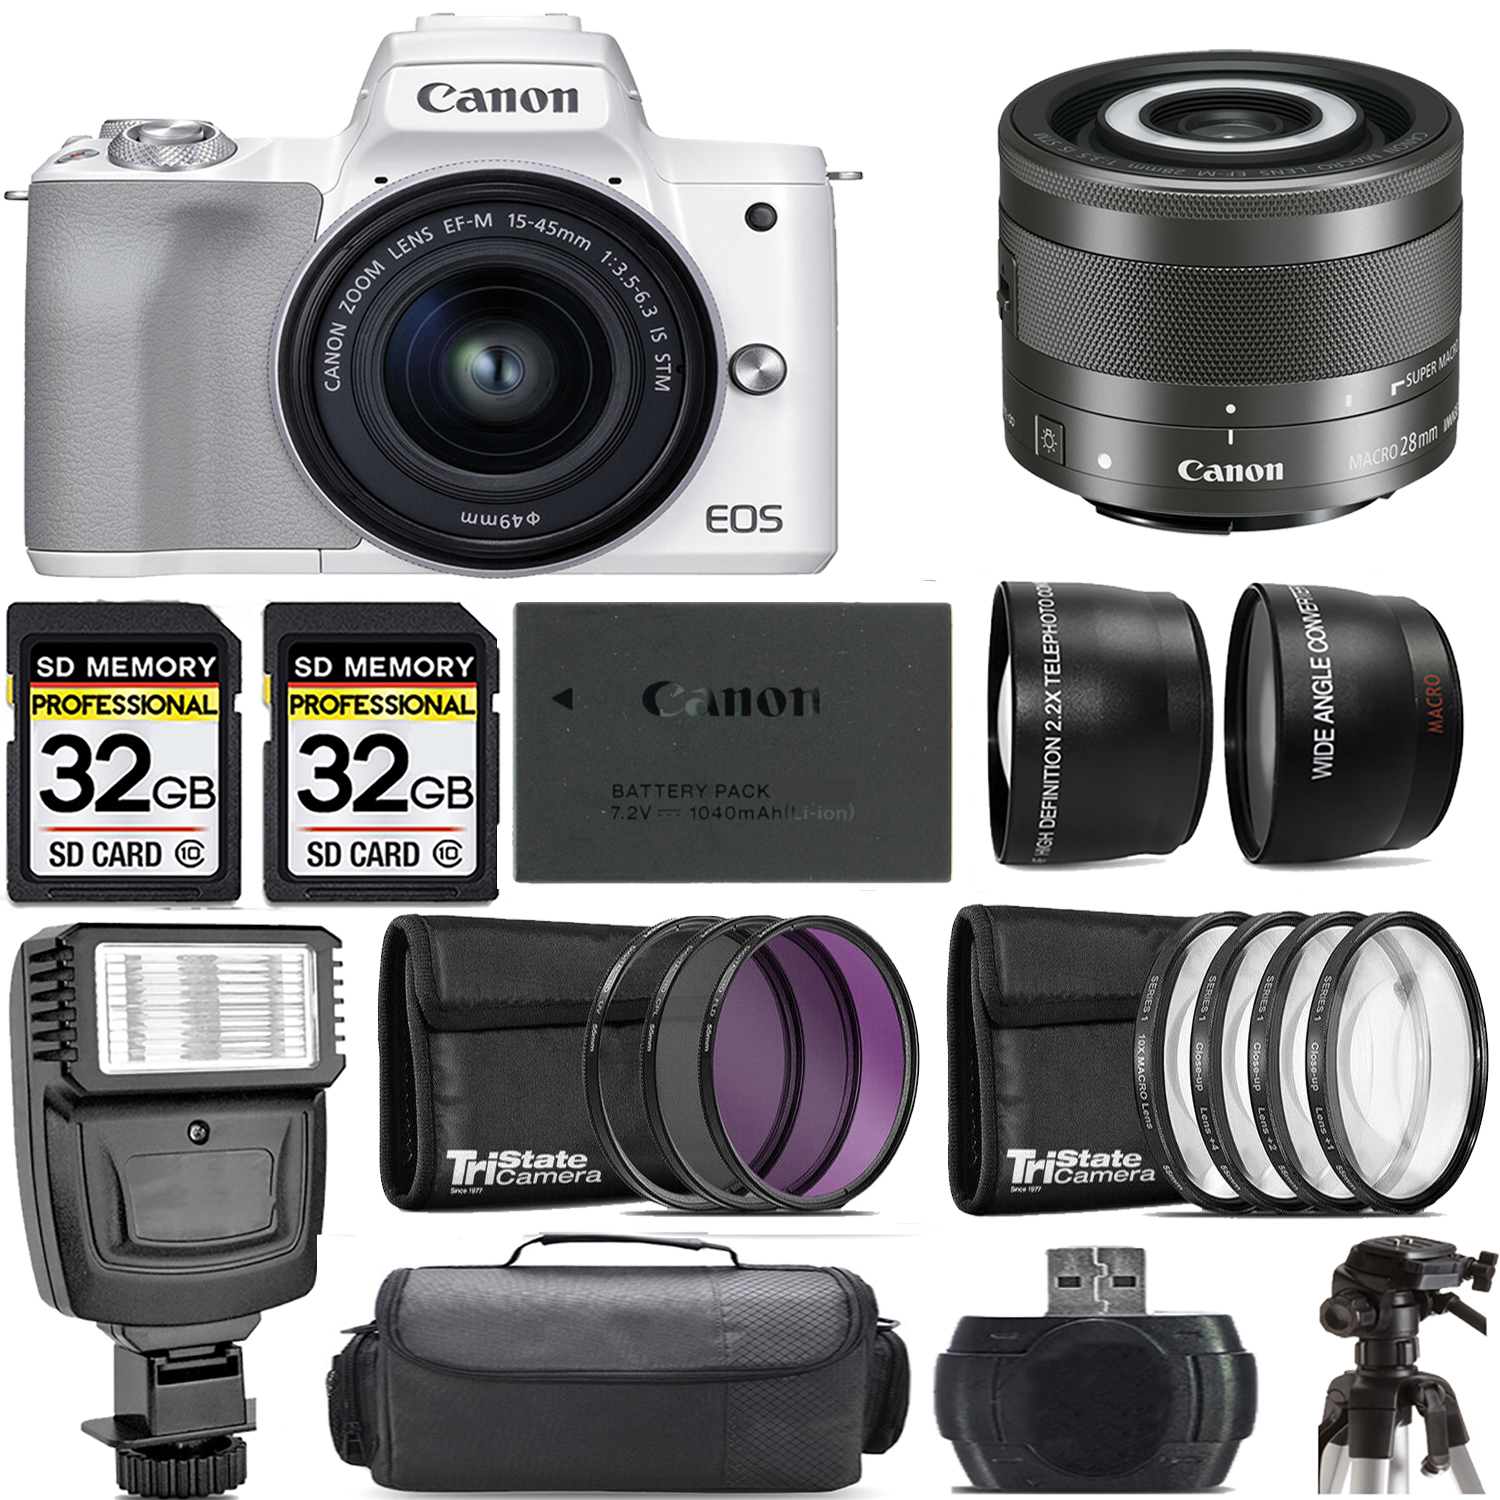 M50 Mark II + 15-45mm Lens (White) + 28mm Macro IS STM Lens + Flash - Kit *FREE SHIPPING*